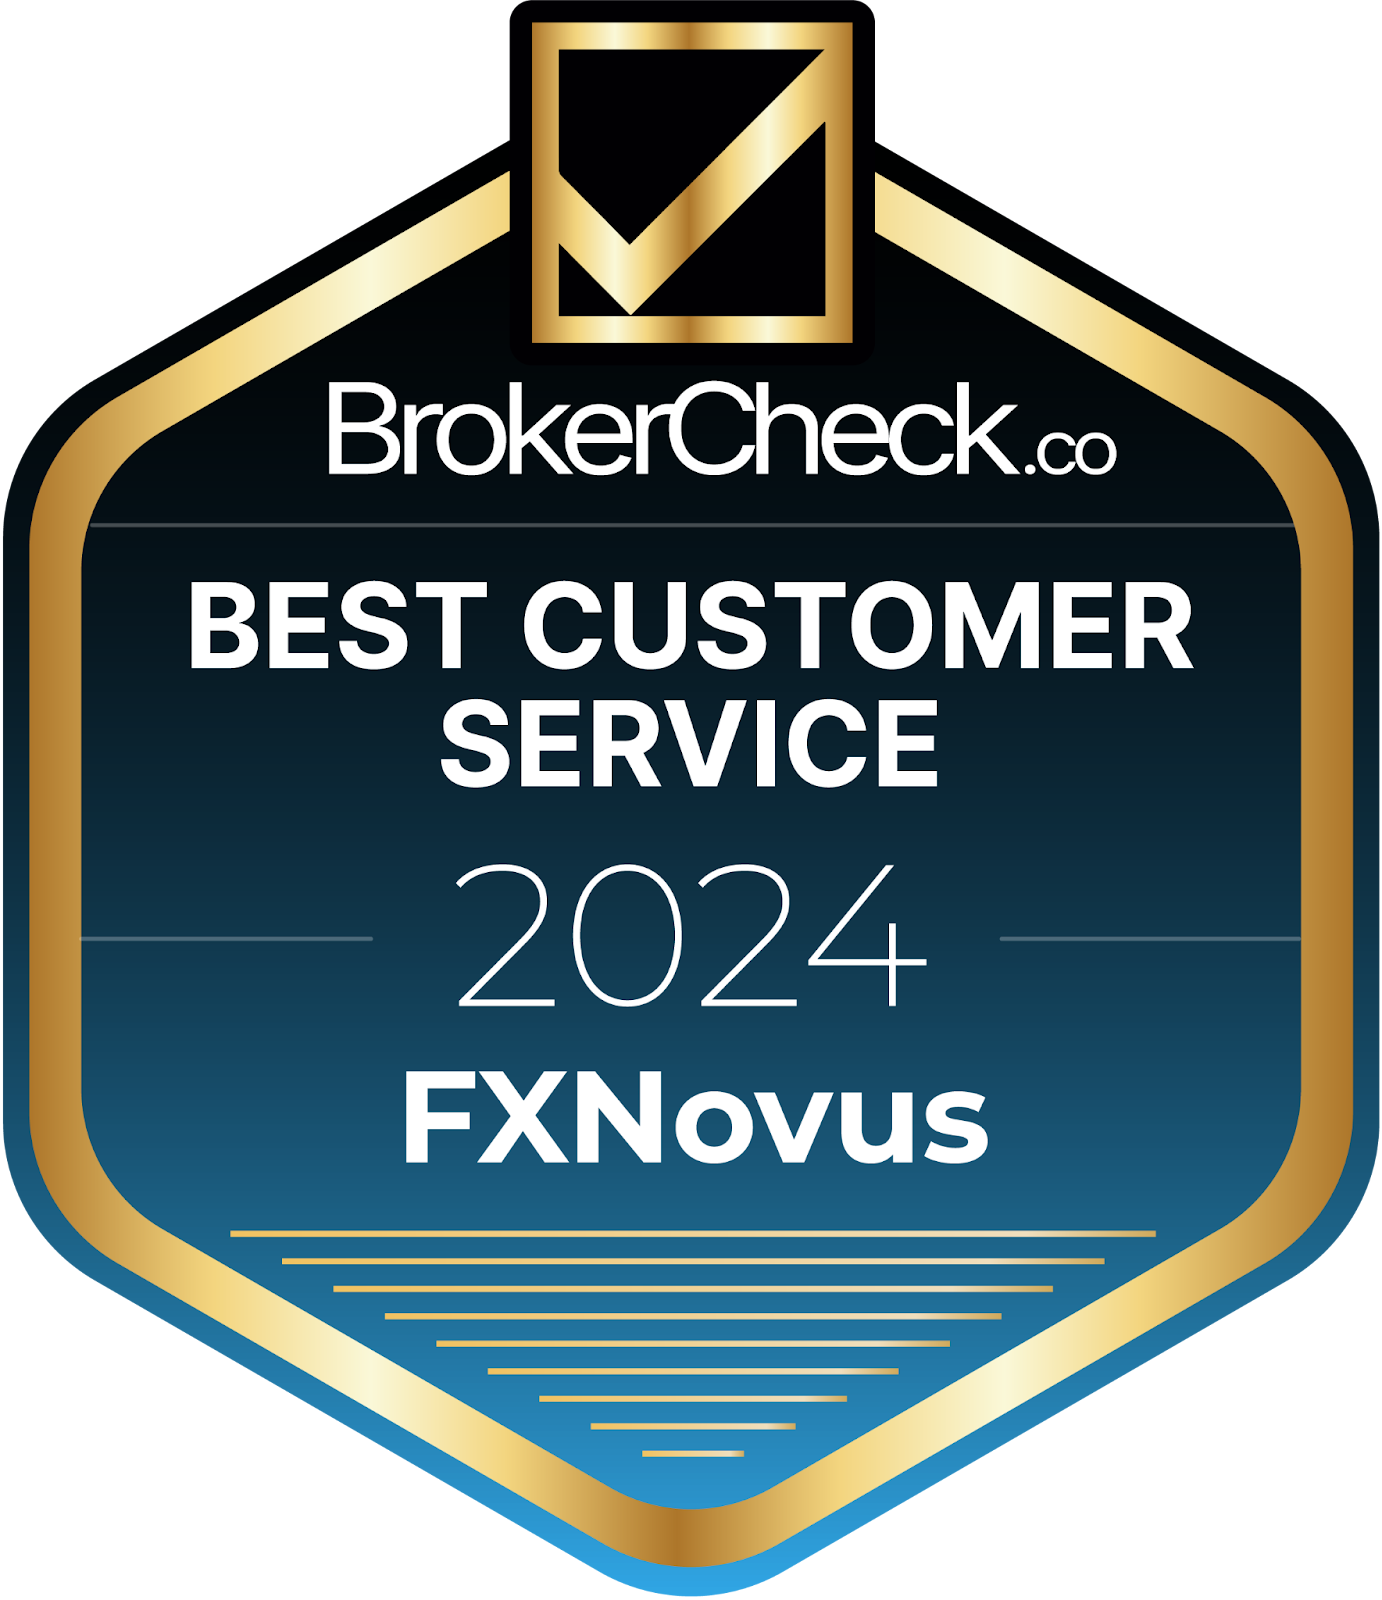  FXNovus erhielt den renommierten BrokerCheck Award für "Bester Kundenservice 2024".